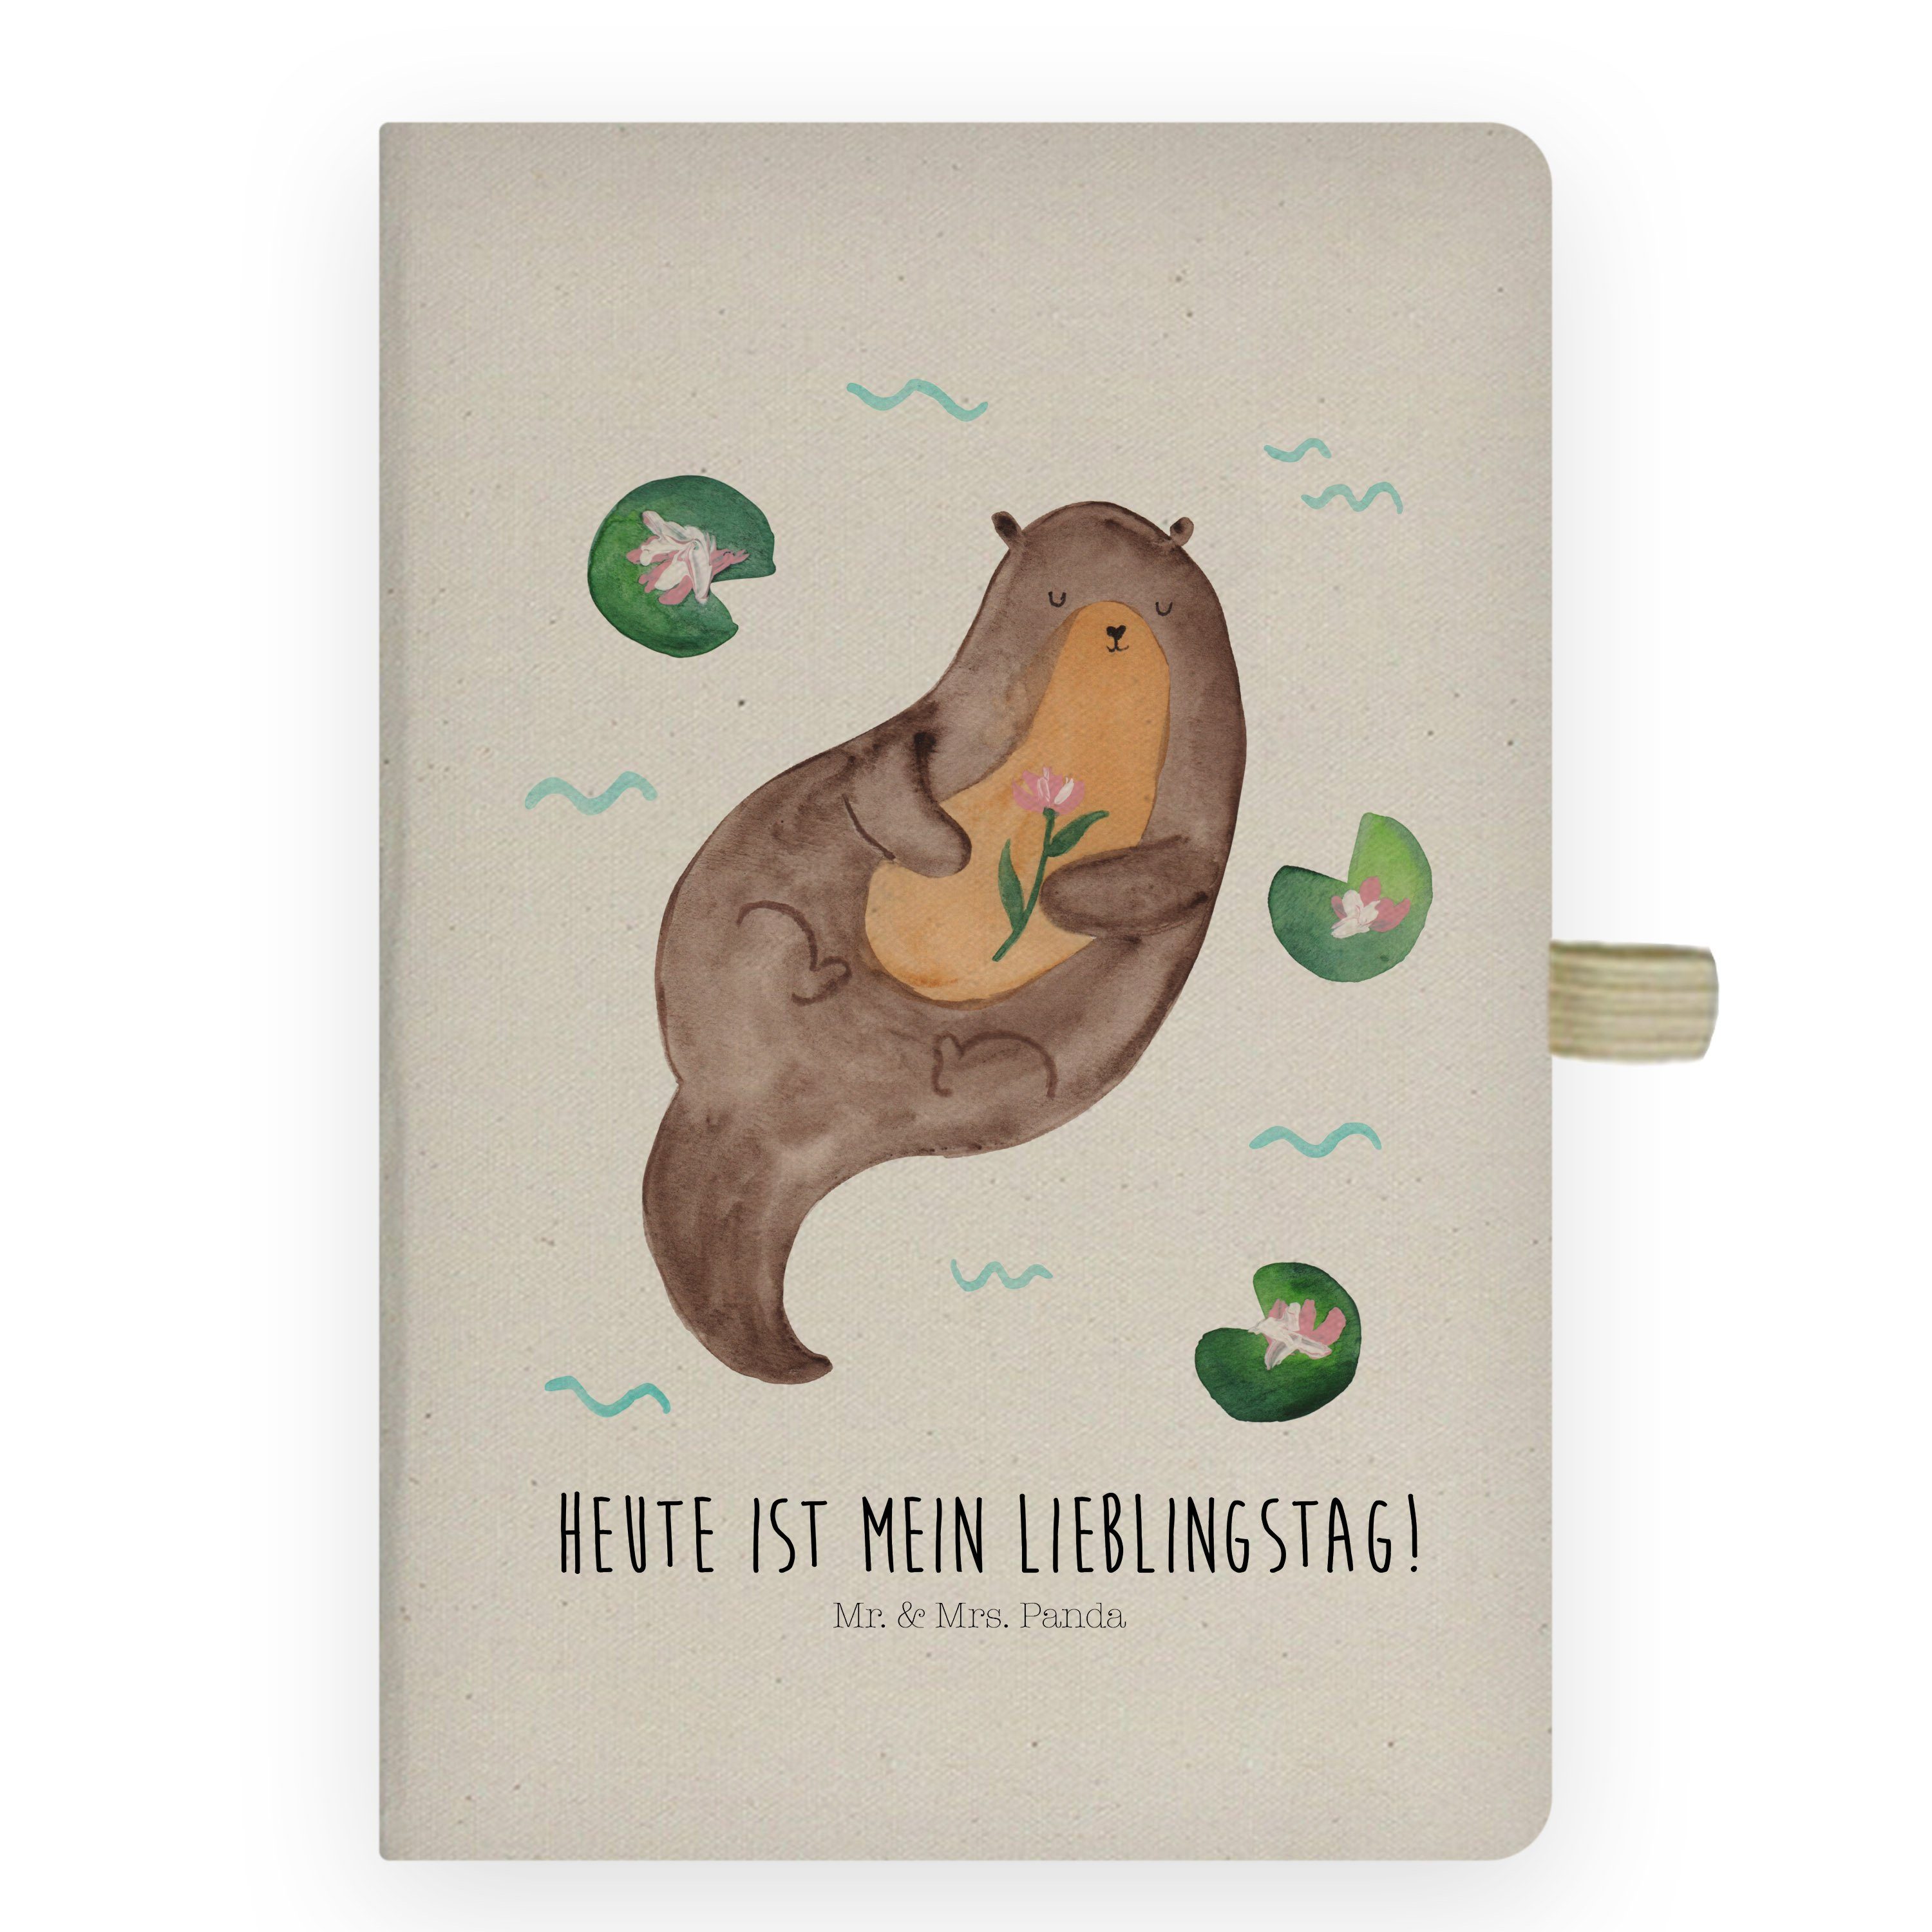 Mr. & Mrs. Panda Notizbuch Otter mit Seerose - Schreibbuch, Notizblock, Eintragebuch, Tagebuch, Skizzenbuch